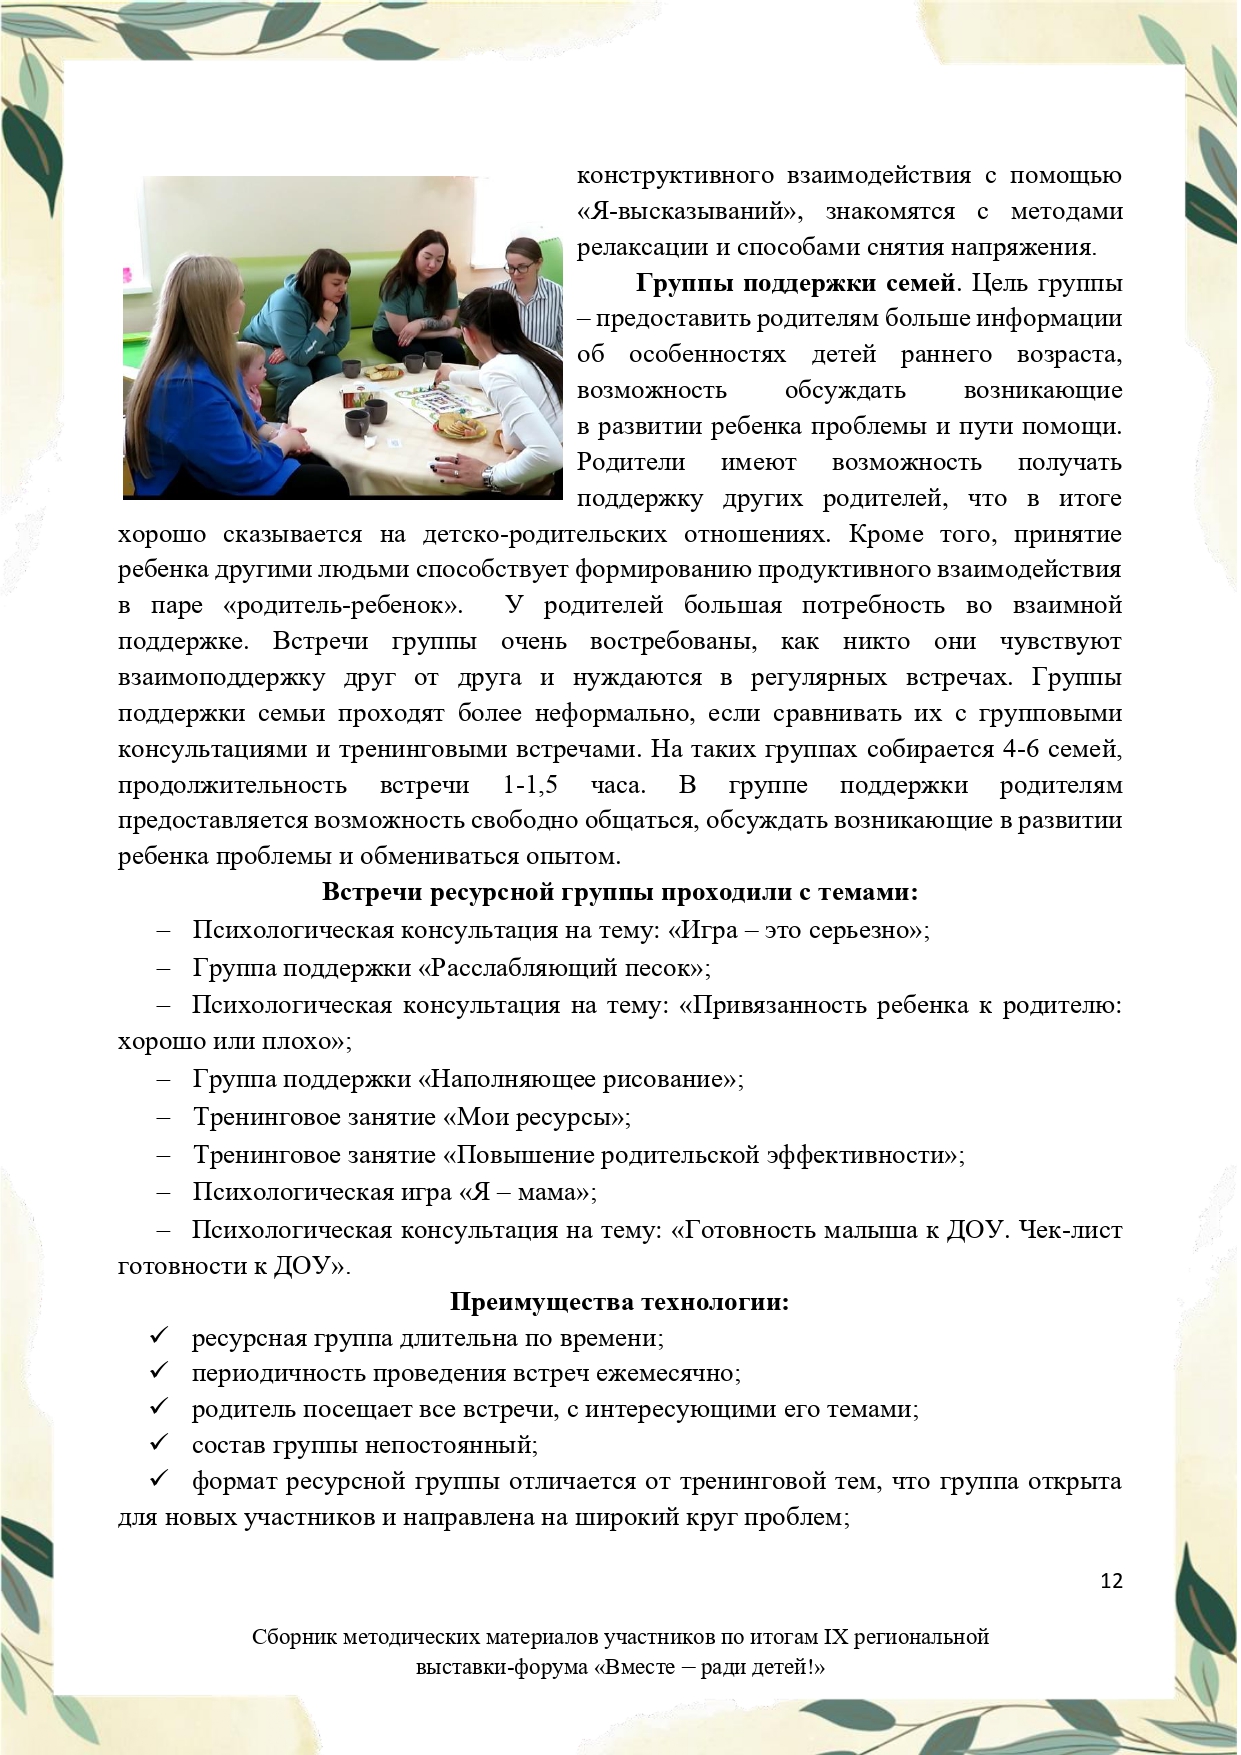 Sbornik_metodicheskikh_materialov_uchastnikov_IX_regionalnoy_vystavki-foruma_Vmeste__radi_detey_33__2023_page-0012